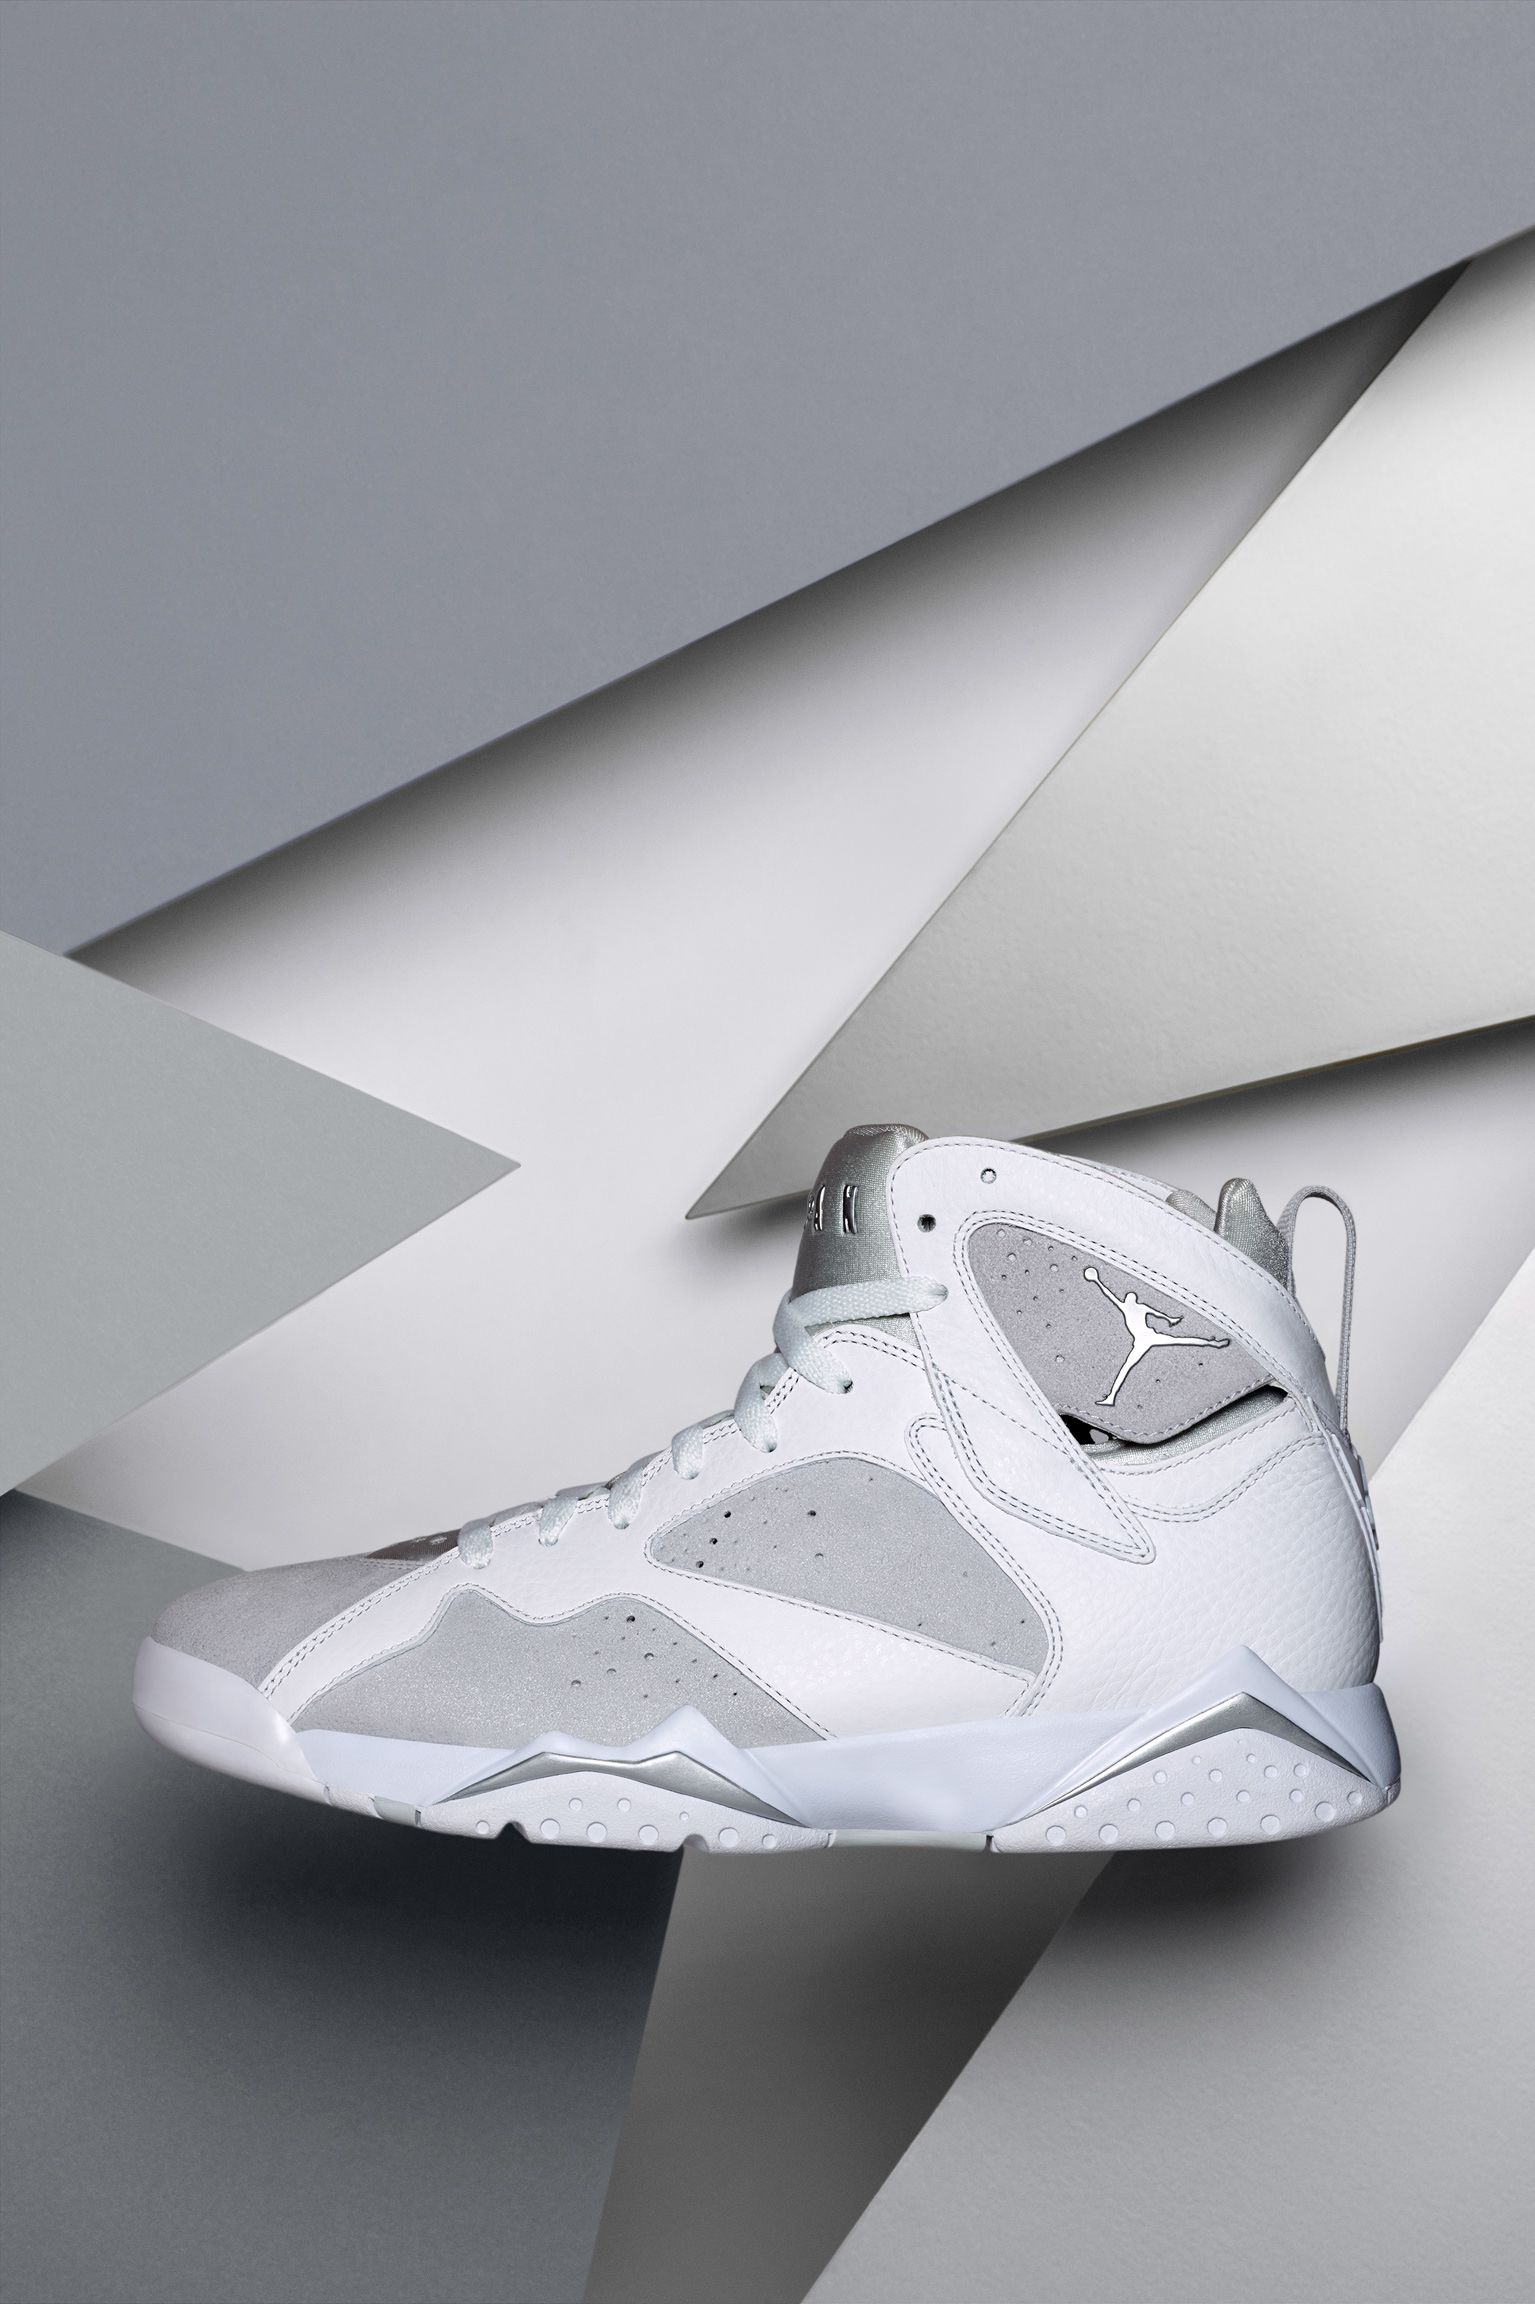 エア ジョーダン 7 レトロ 'White & Pure Platinum' 発売日. Nike